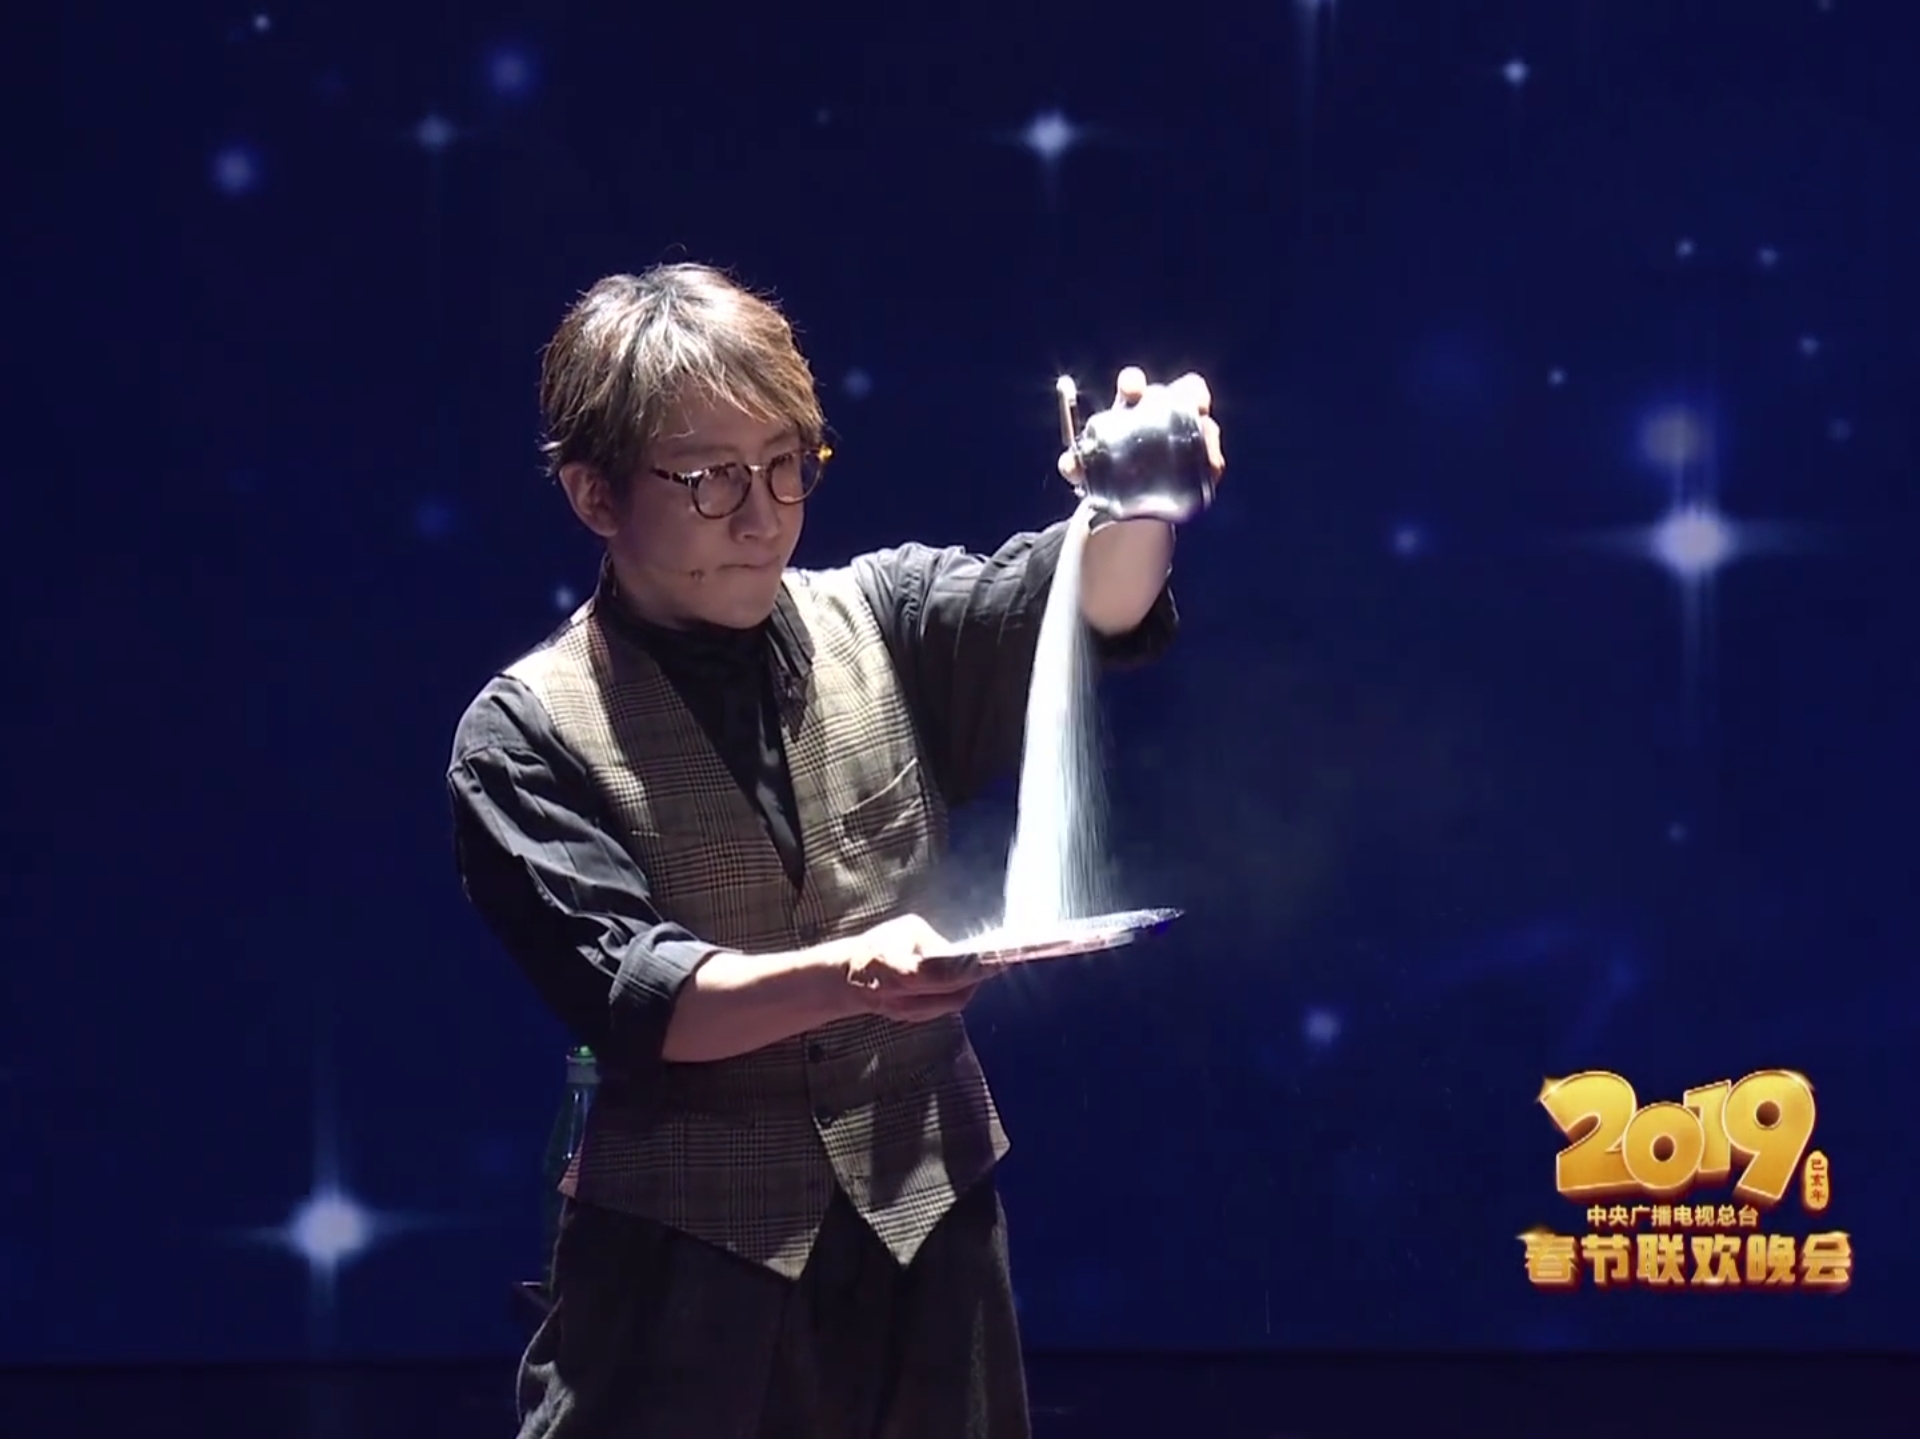 《2019央视春晚》刘谦魔术存在漏洞,但他已成功达到